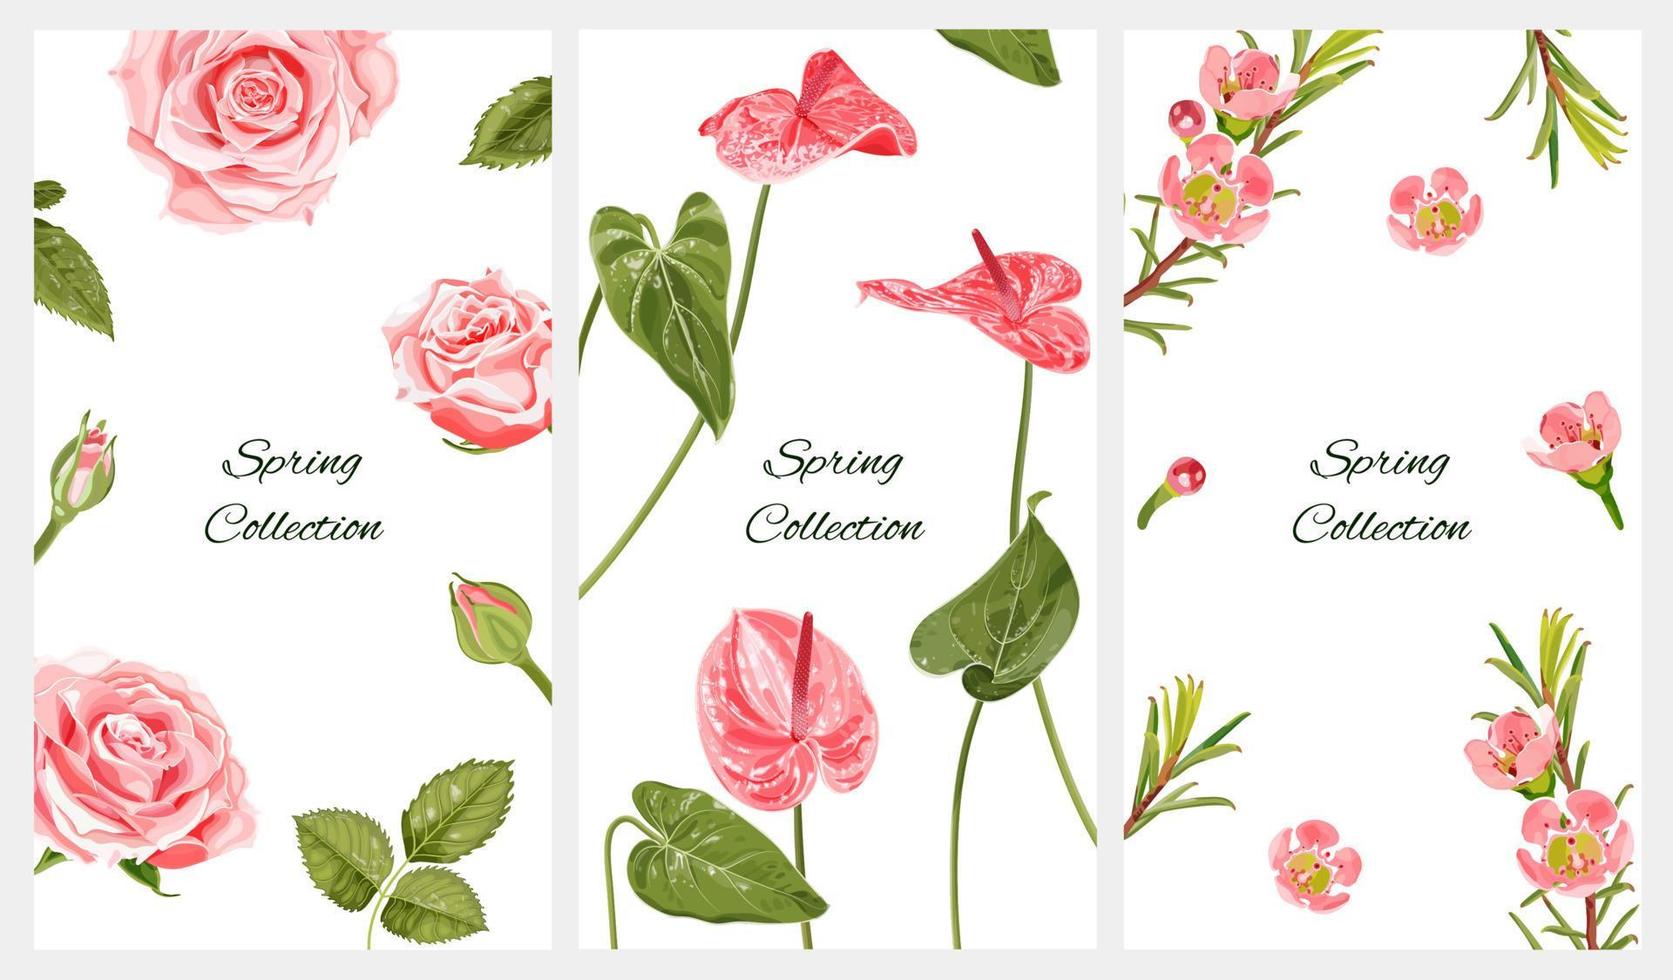 verzameling verticale lenteachtergronden voor sociale netwerken met plaats voor tekst. roze rozen, anthurium bloemen en chamelaucium. botanische illustraties op een witte achtergrond. vector